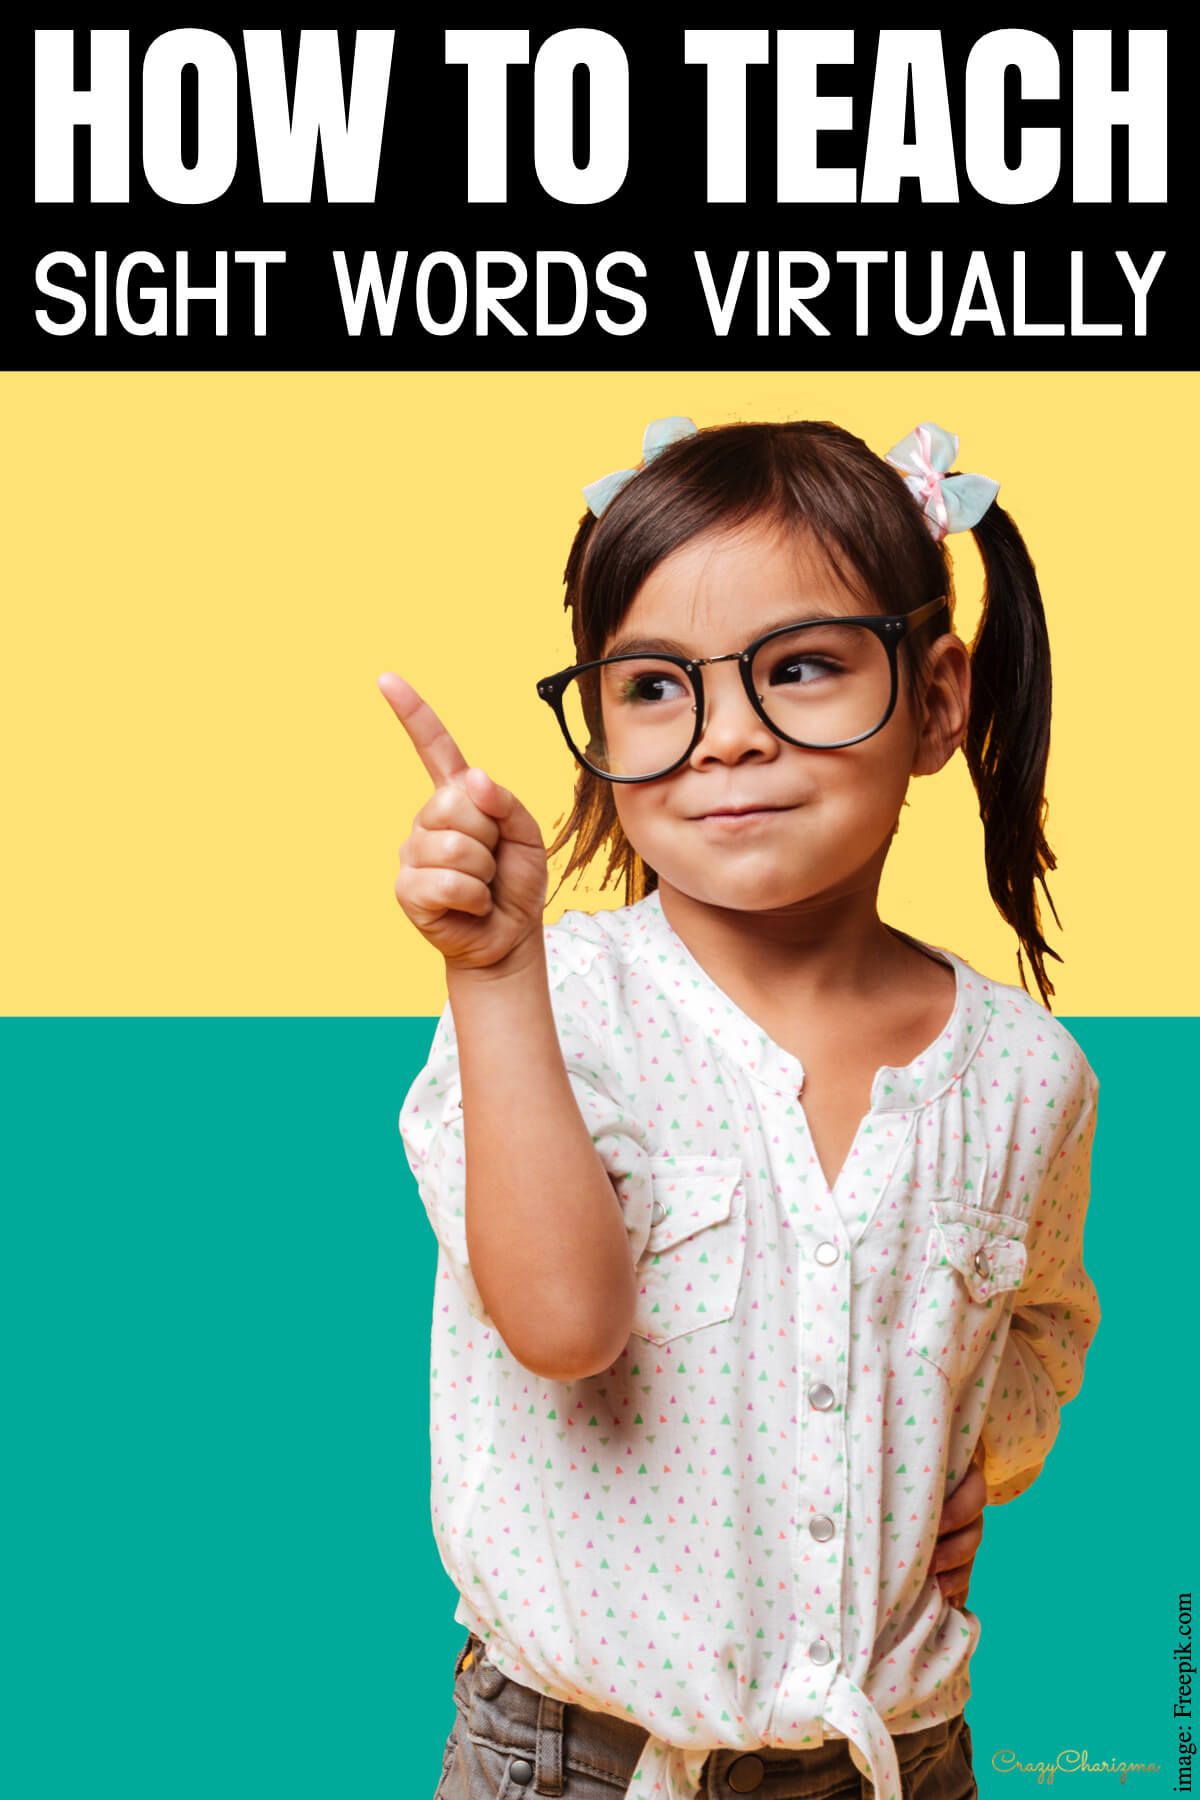 How to Teach Sight Words Virtually